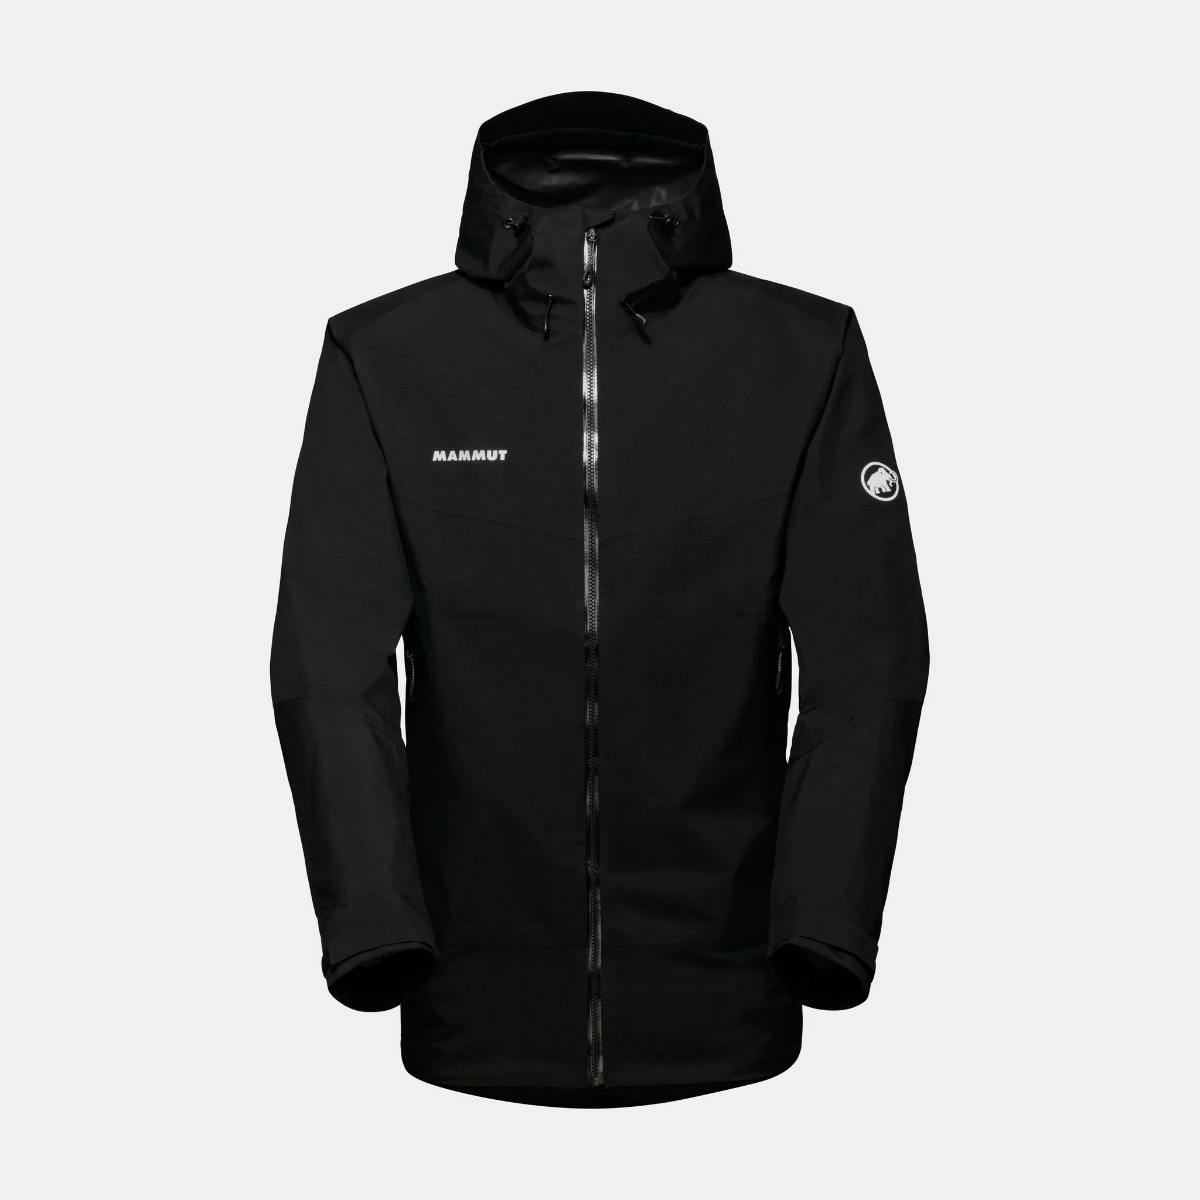 Mammut - Convey Tour HS Hooded Jacket Men - XL Black